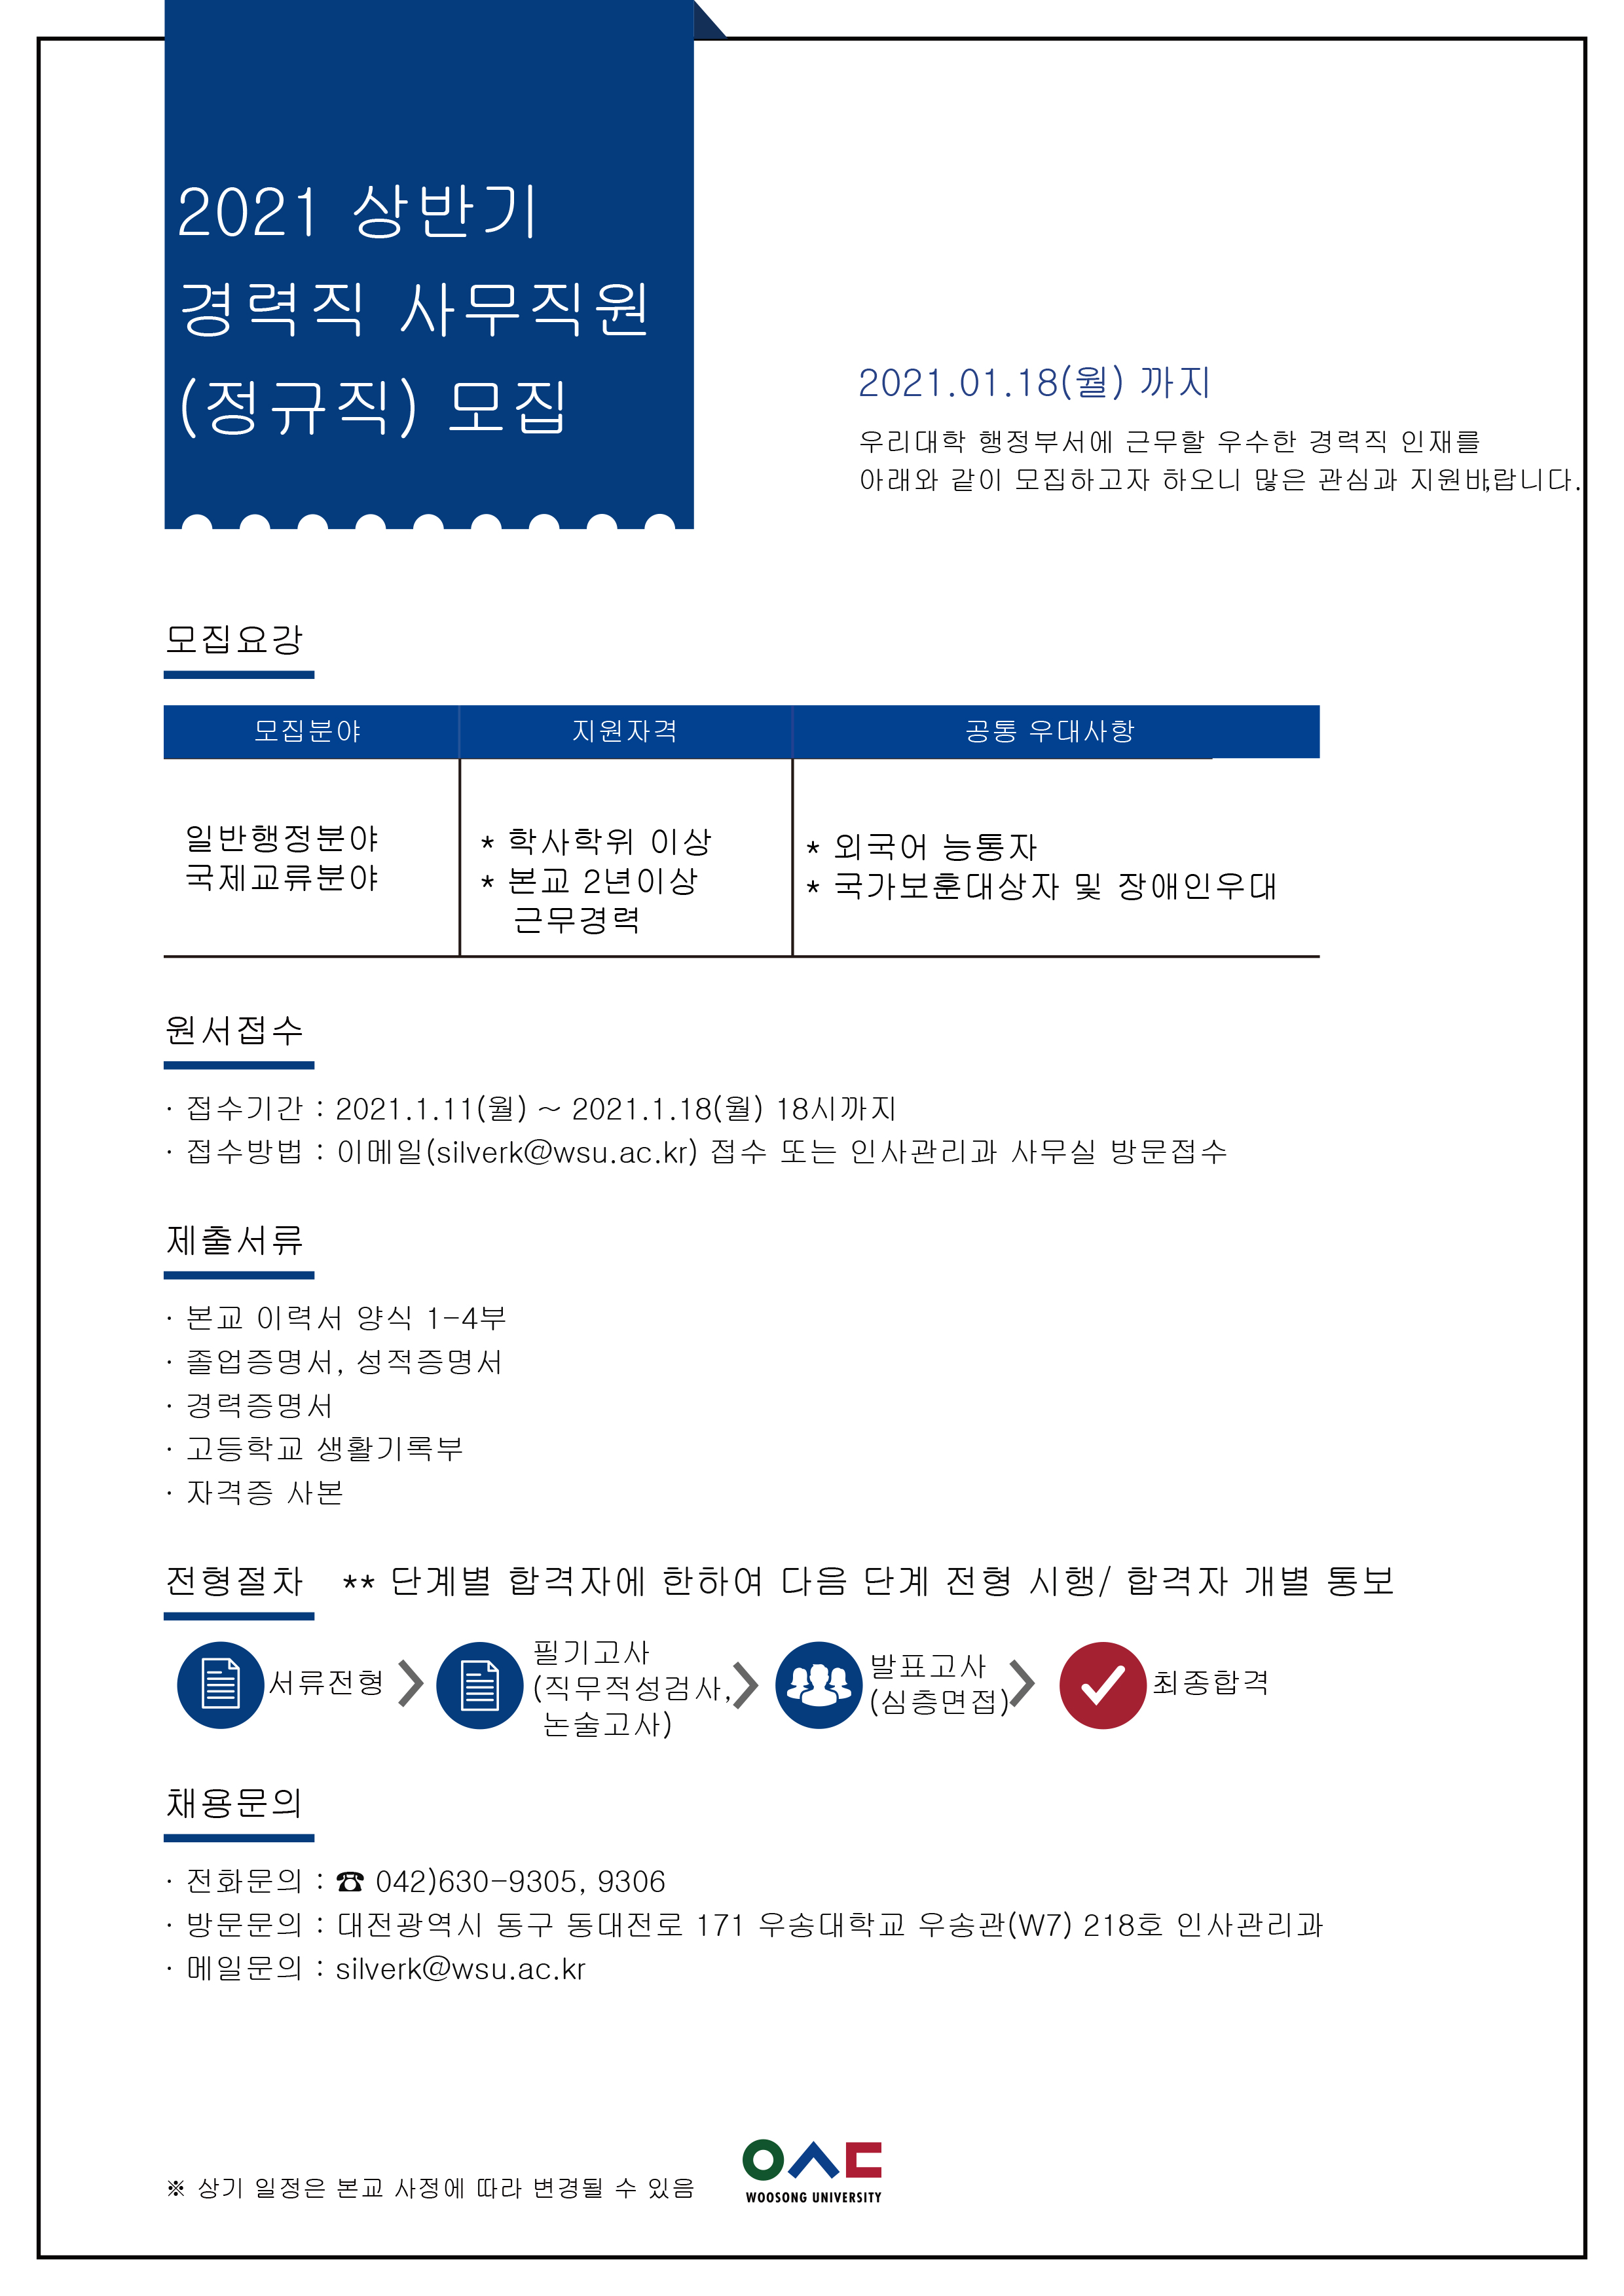 2021년 상반기 경력직 사무직원 채용 안내(1월 18일 마감)